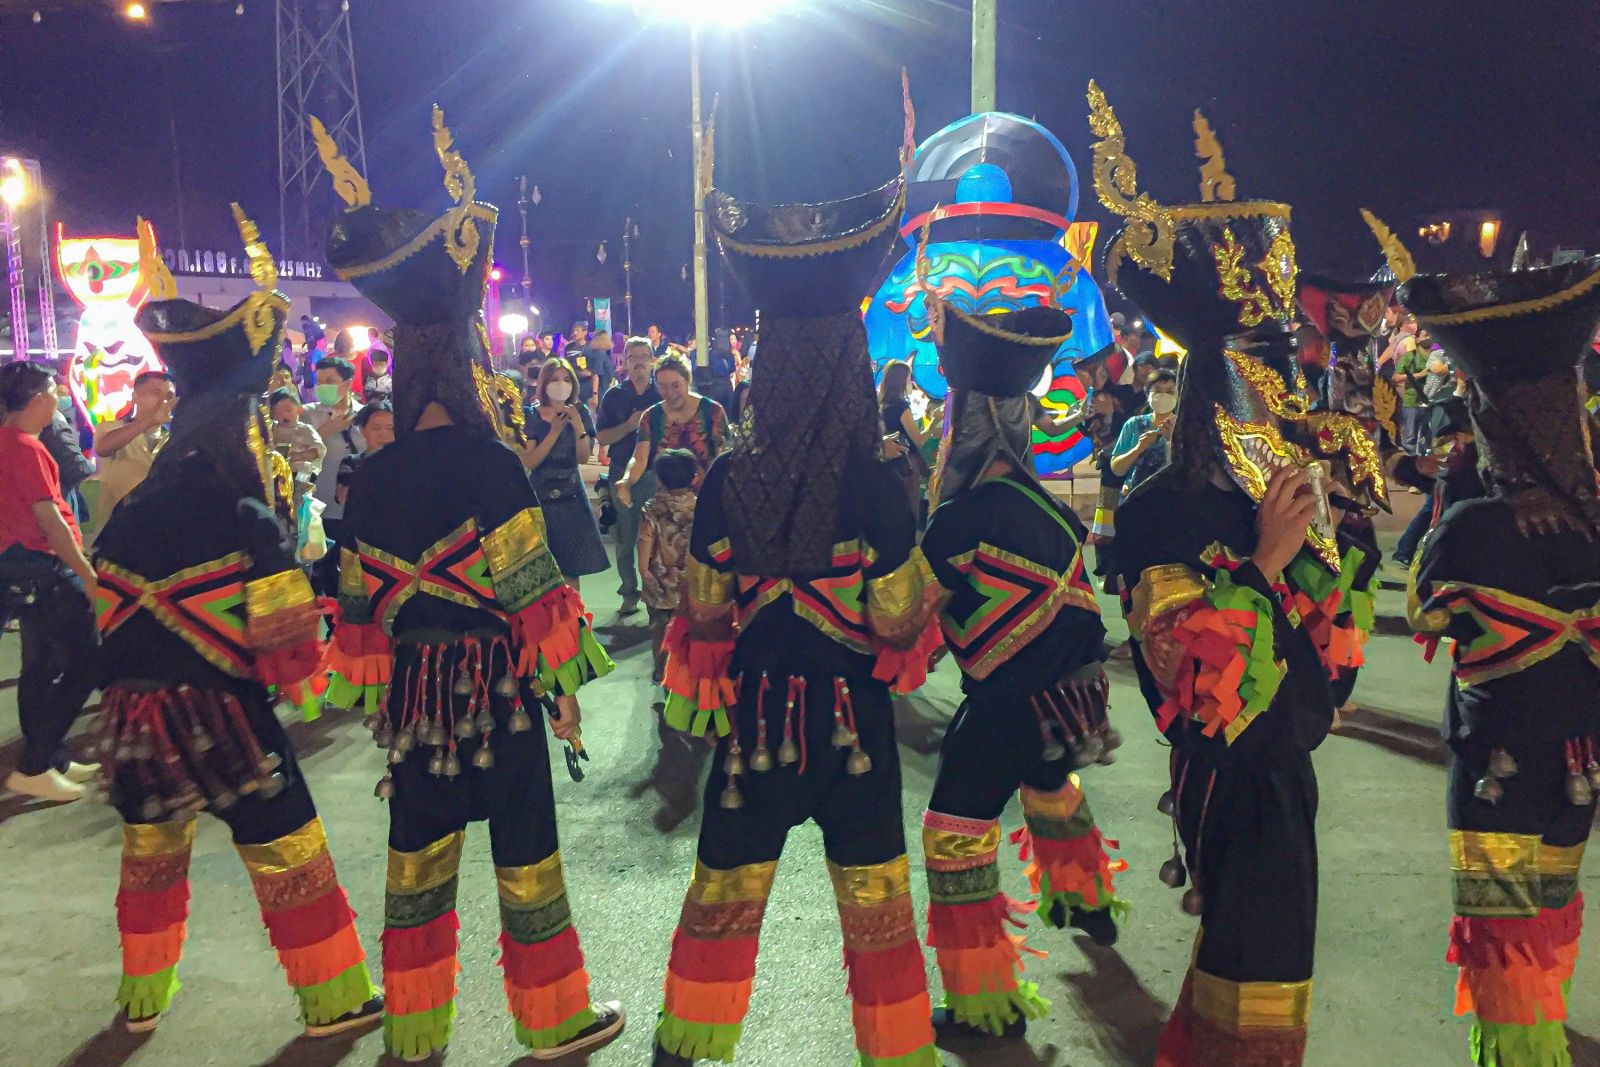 Traditionelle Tänze, Musik und die aufwändigen, teils sehr wertvollen Kostüme machen das Festival zu einem einmaligen Erlebnis.